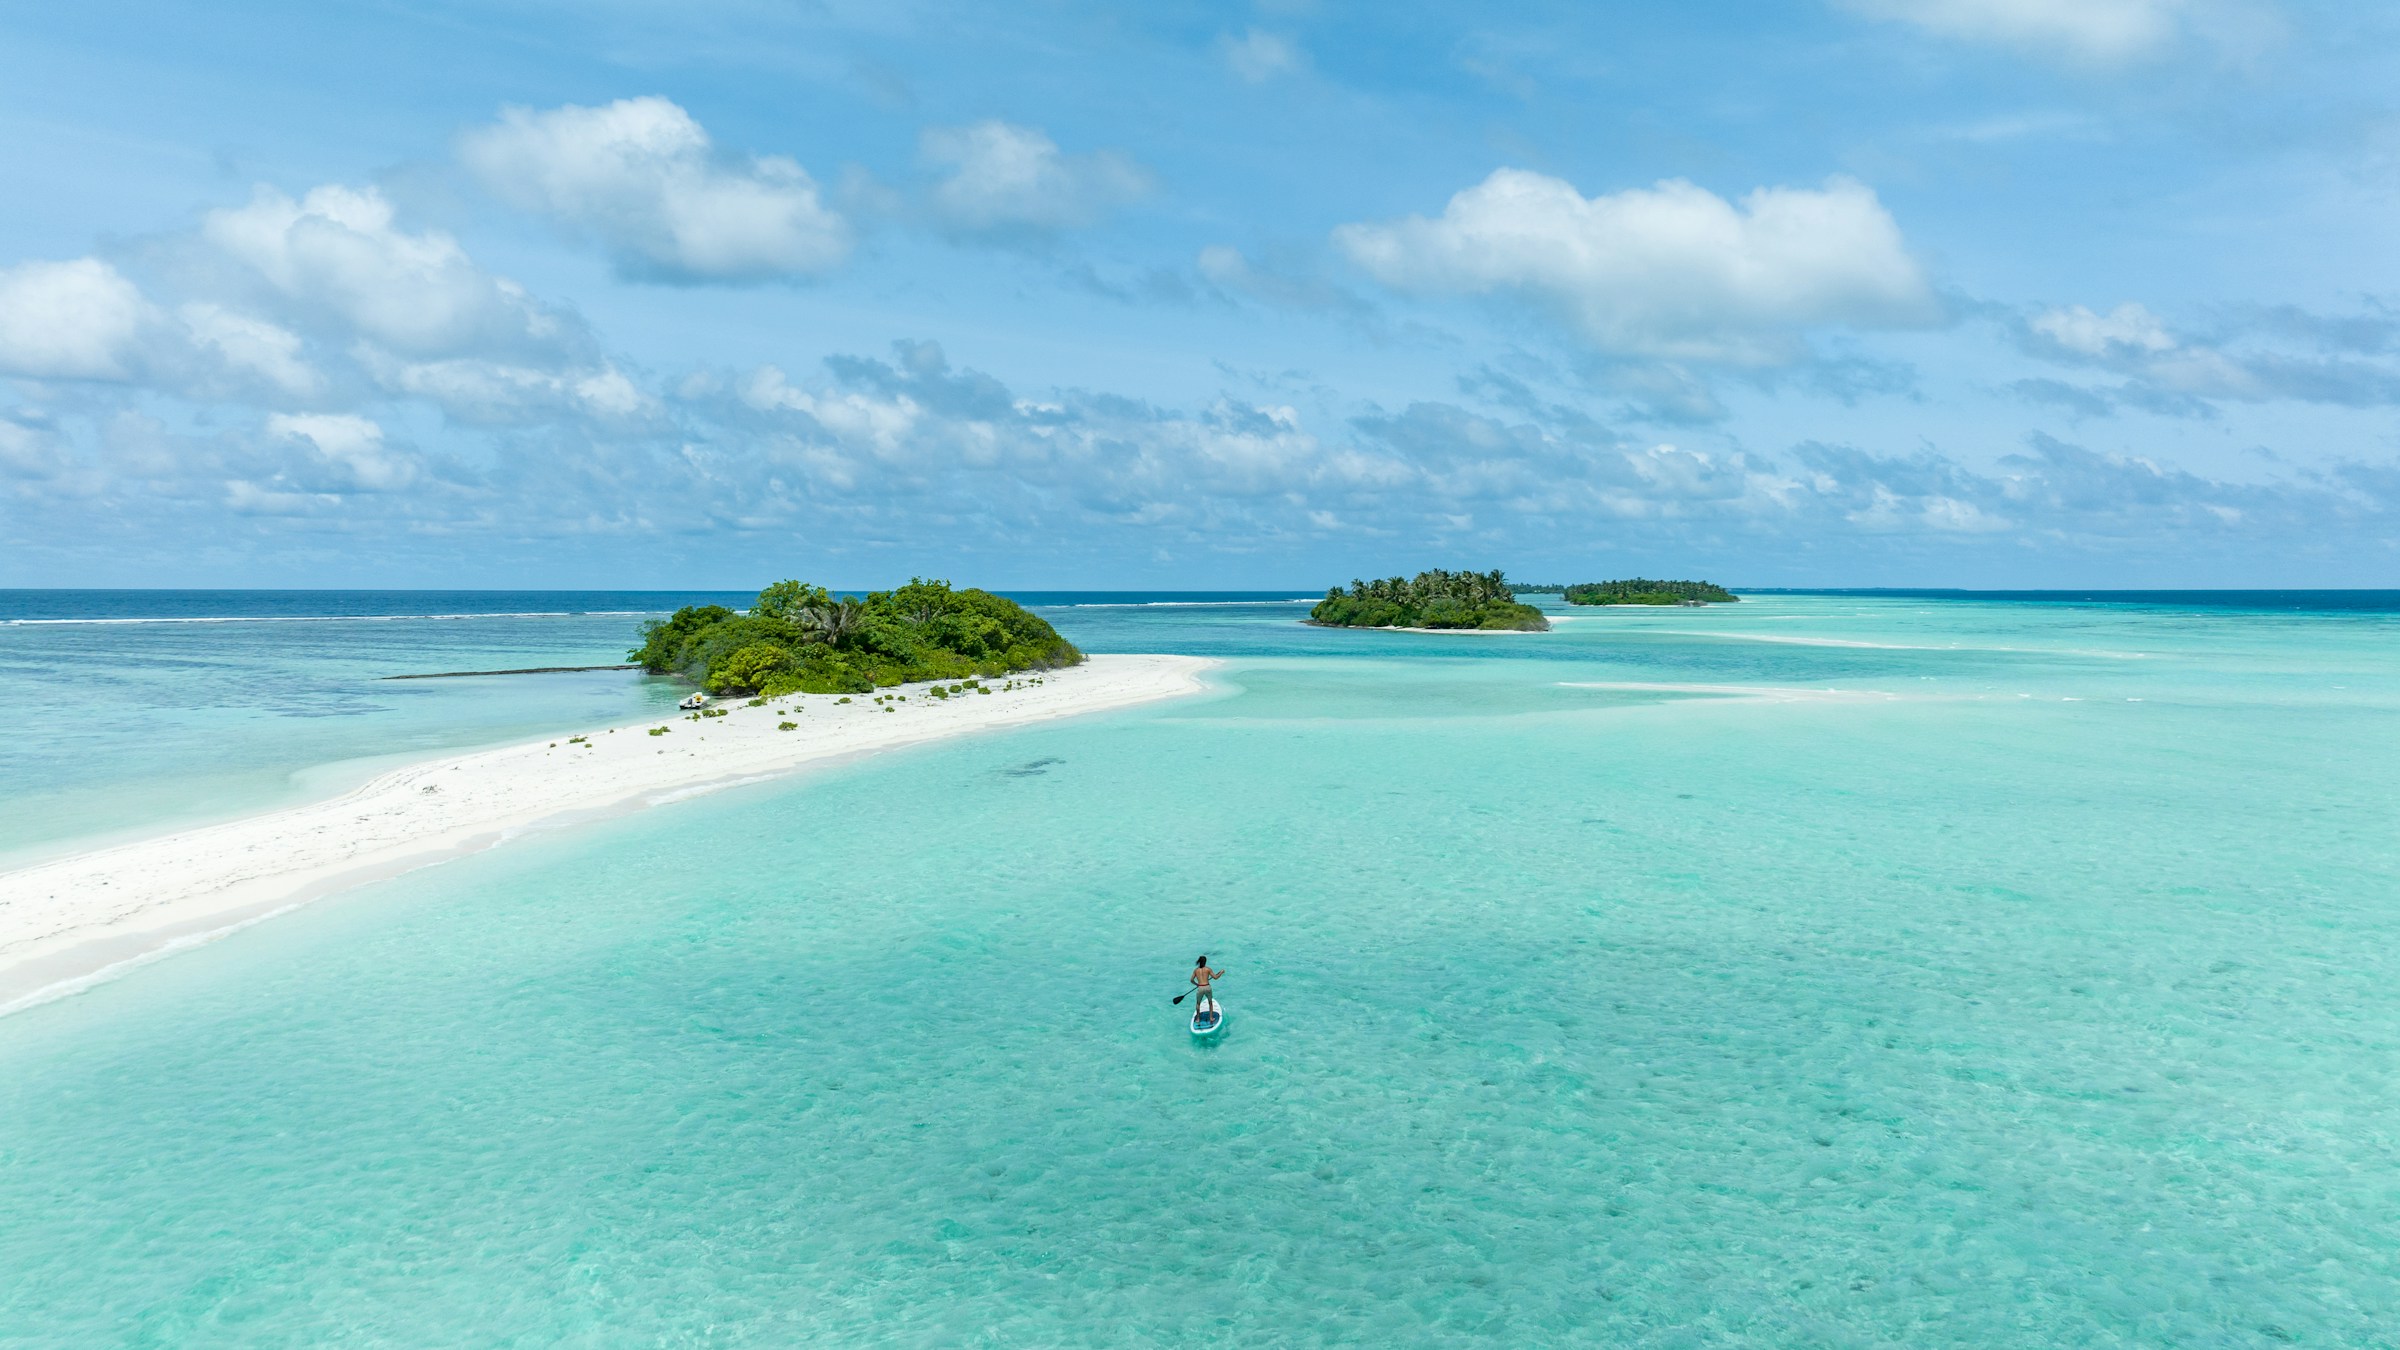 Vy över tropiska öar med kristallklart turkos vatten och en person som paddlar på en standuppaddlebräda, vita sandstränder och frodig grönska i bakgrunden på Caymanöarna.